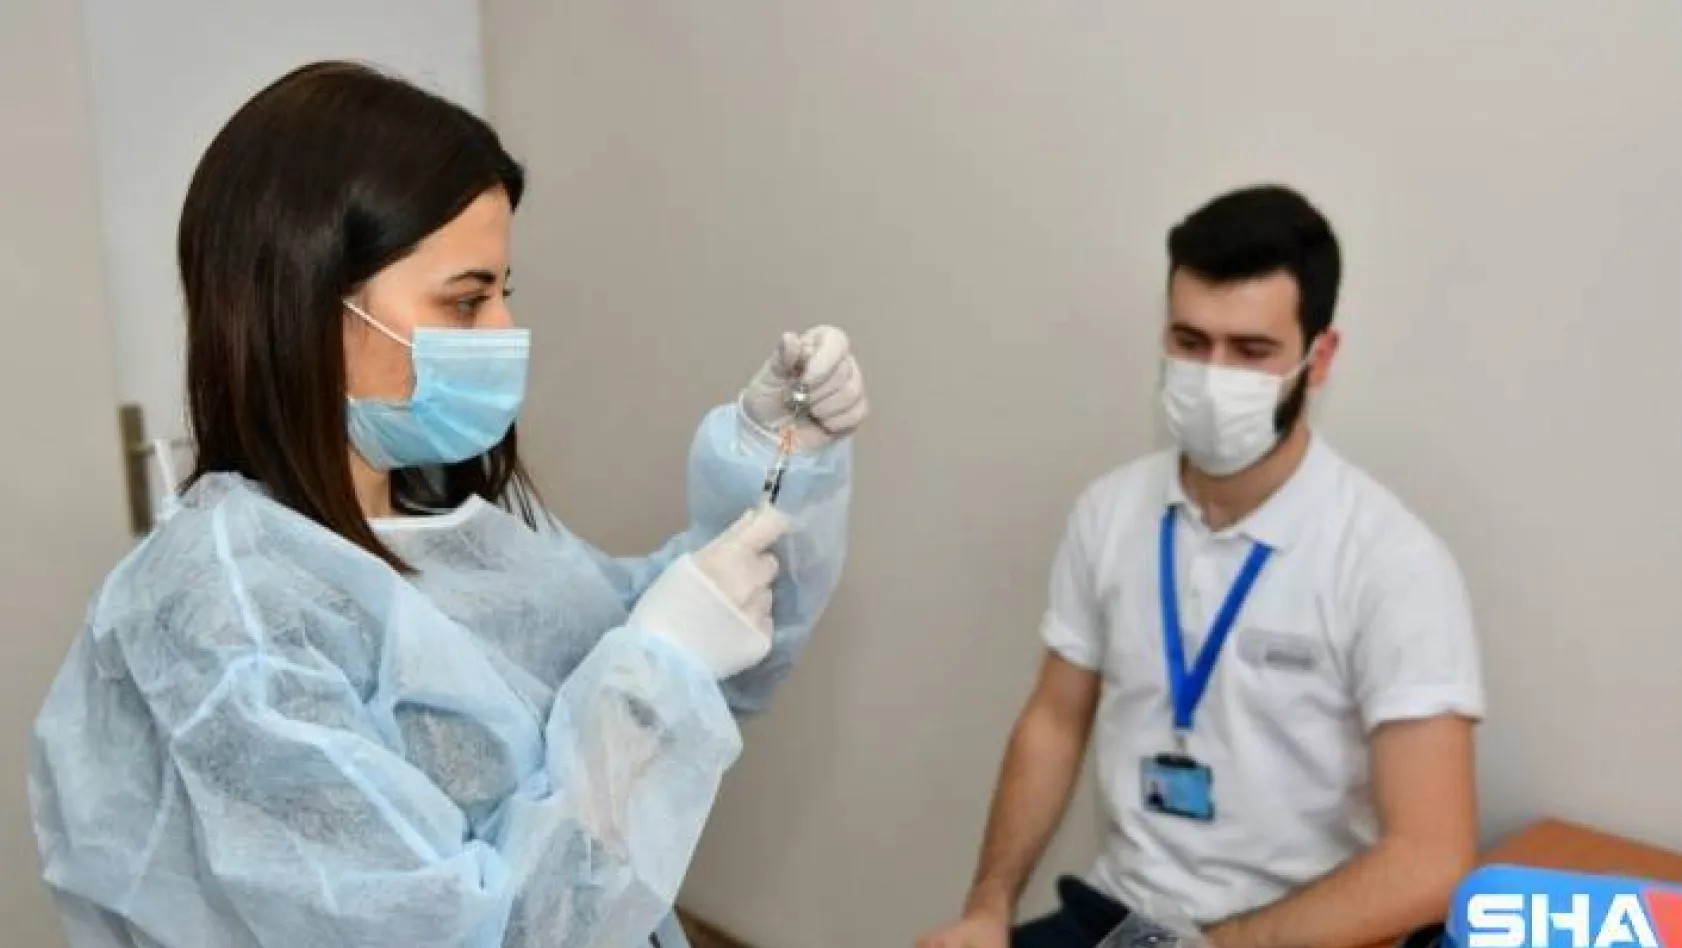 Esenyurt Belediyesi sağlık çalışanları Covıd-19 aşısının ilk dozunu yaptırdı